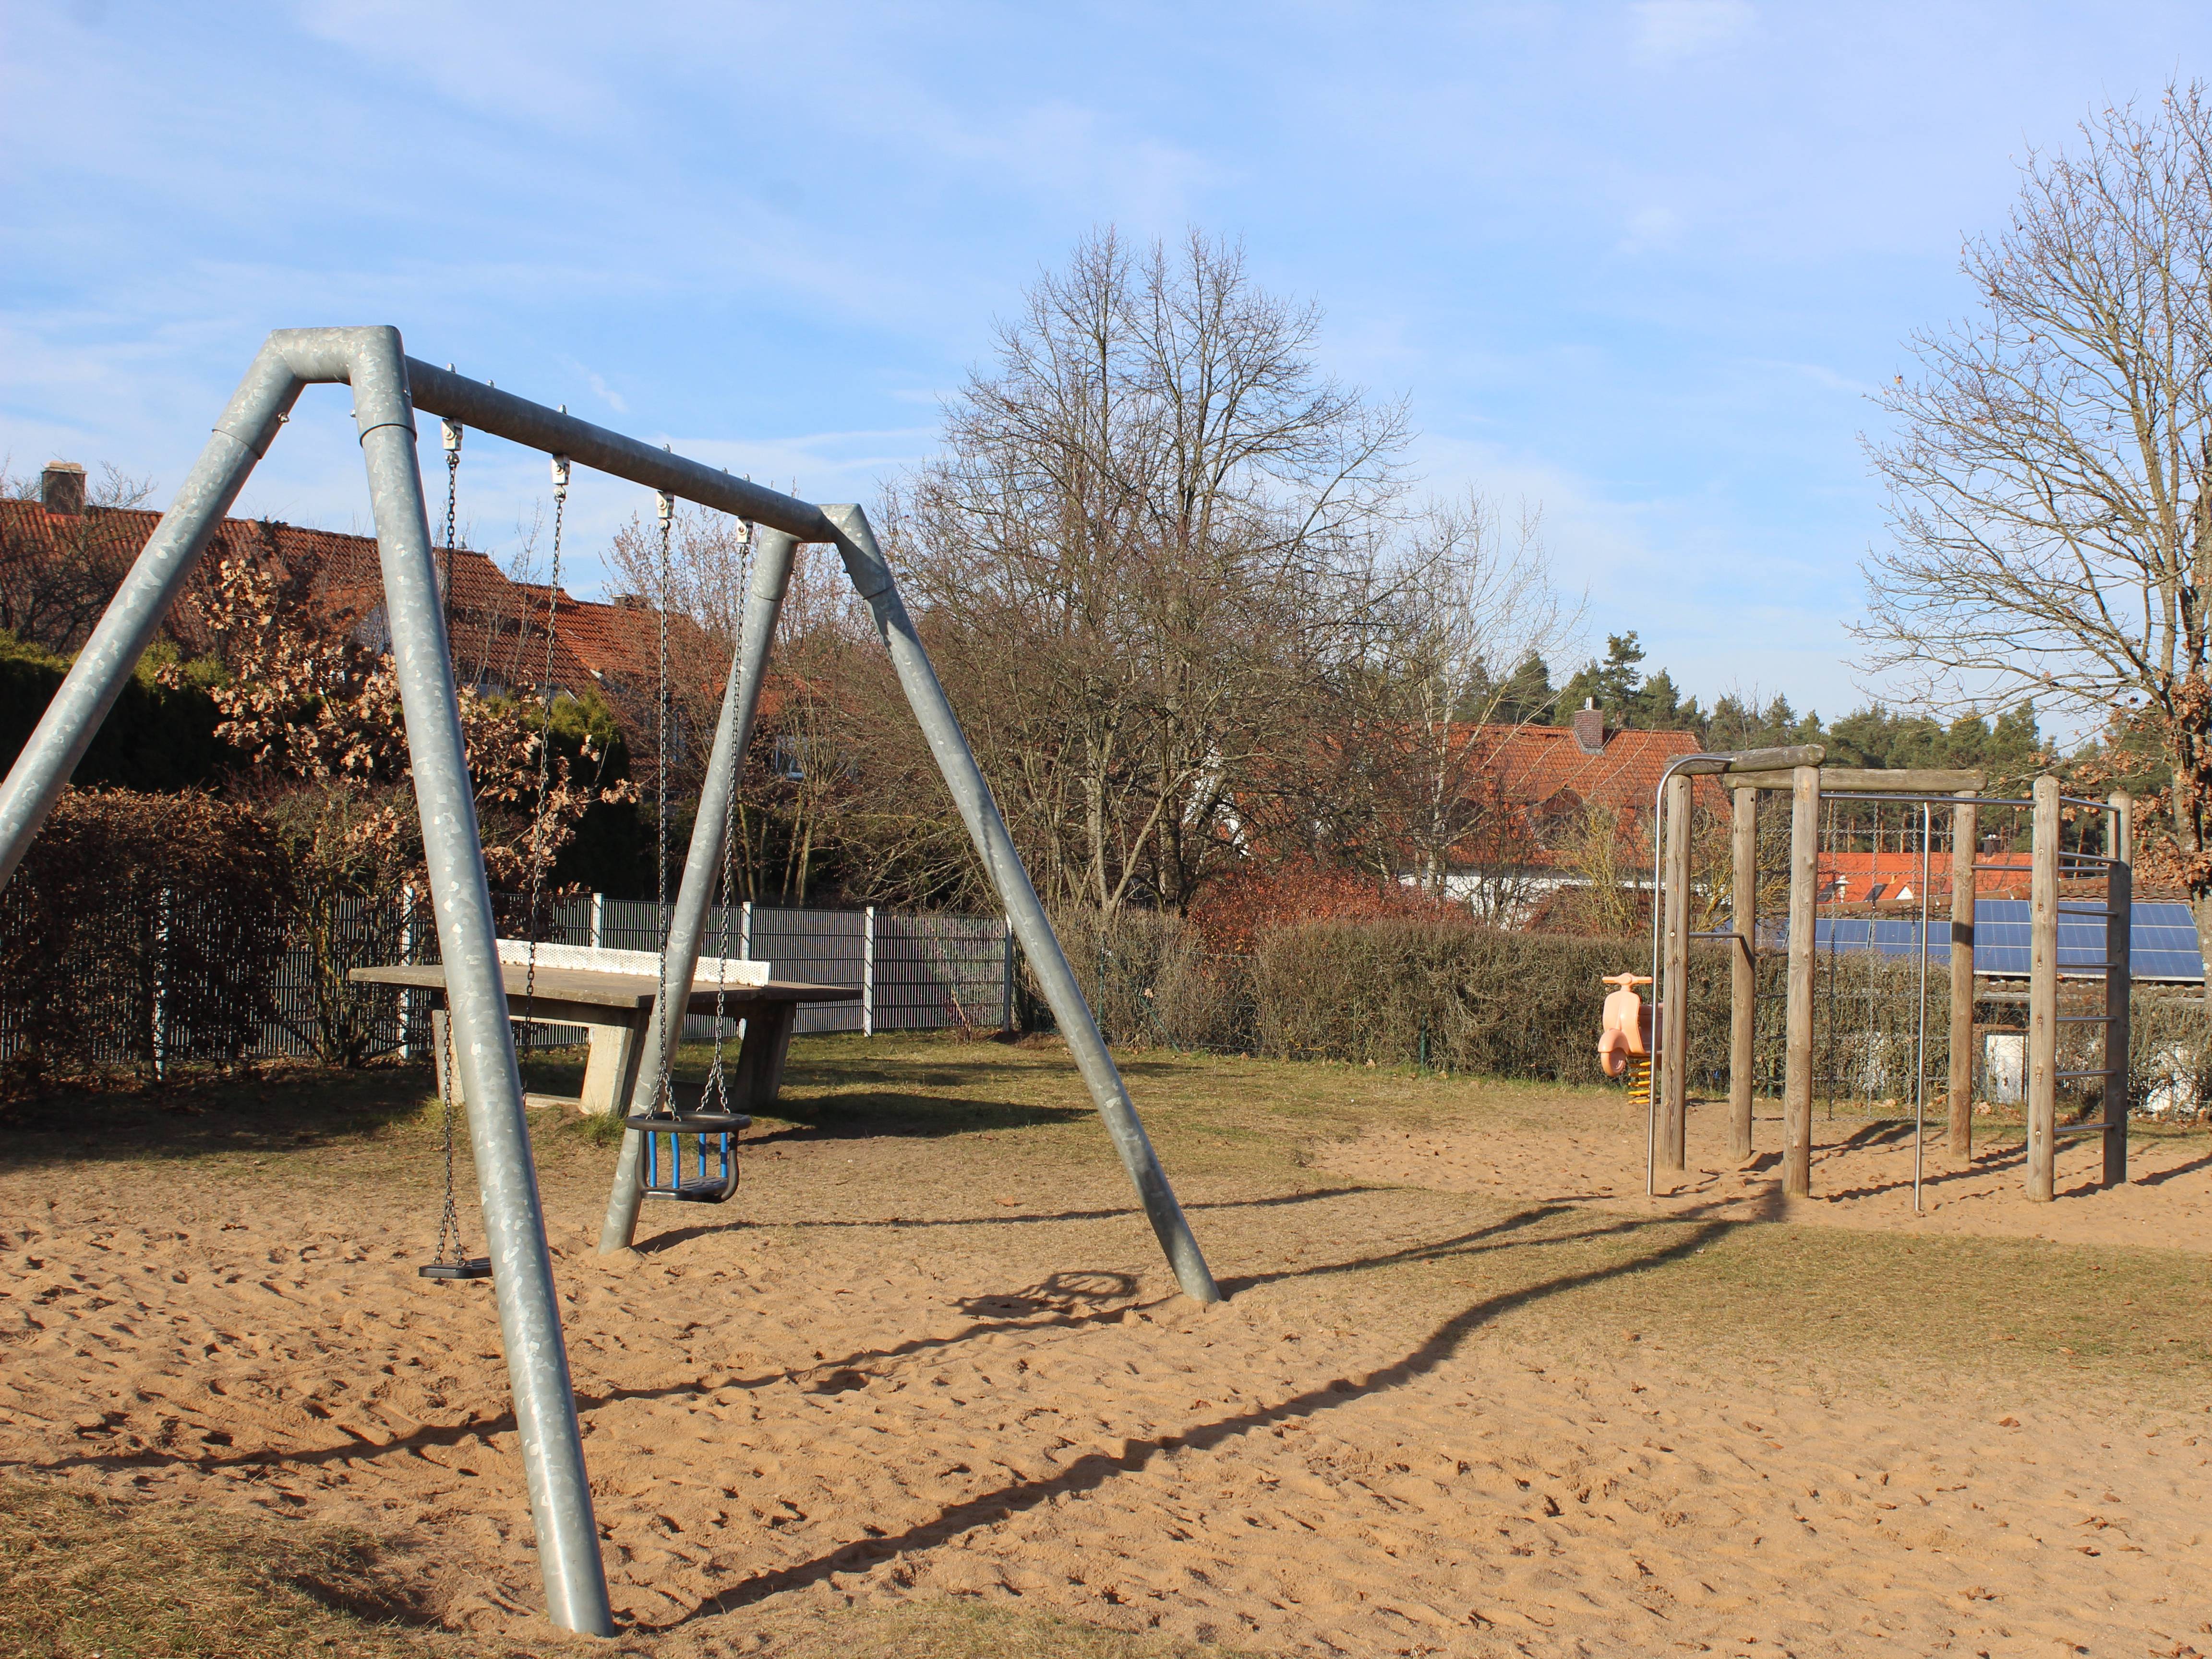  Spielplatz in Büchenbach, Karlsbader Straße 